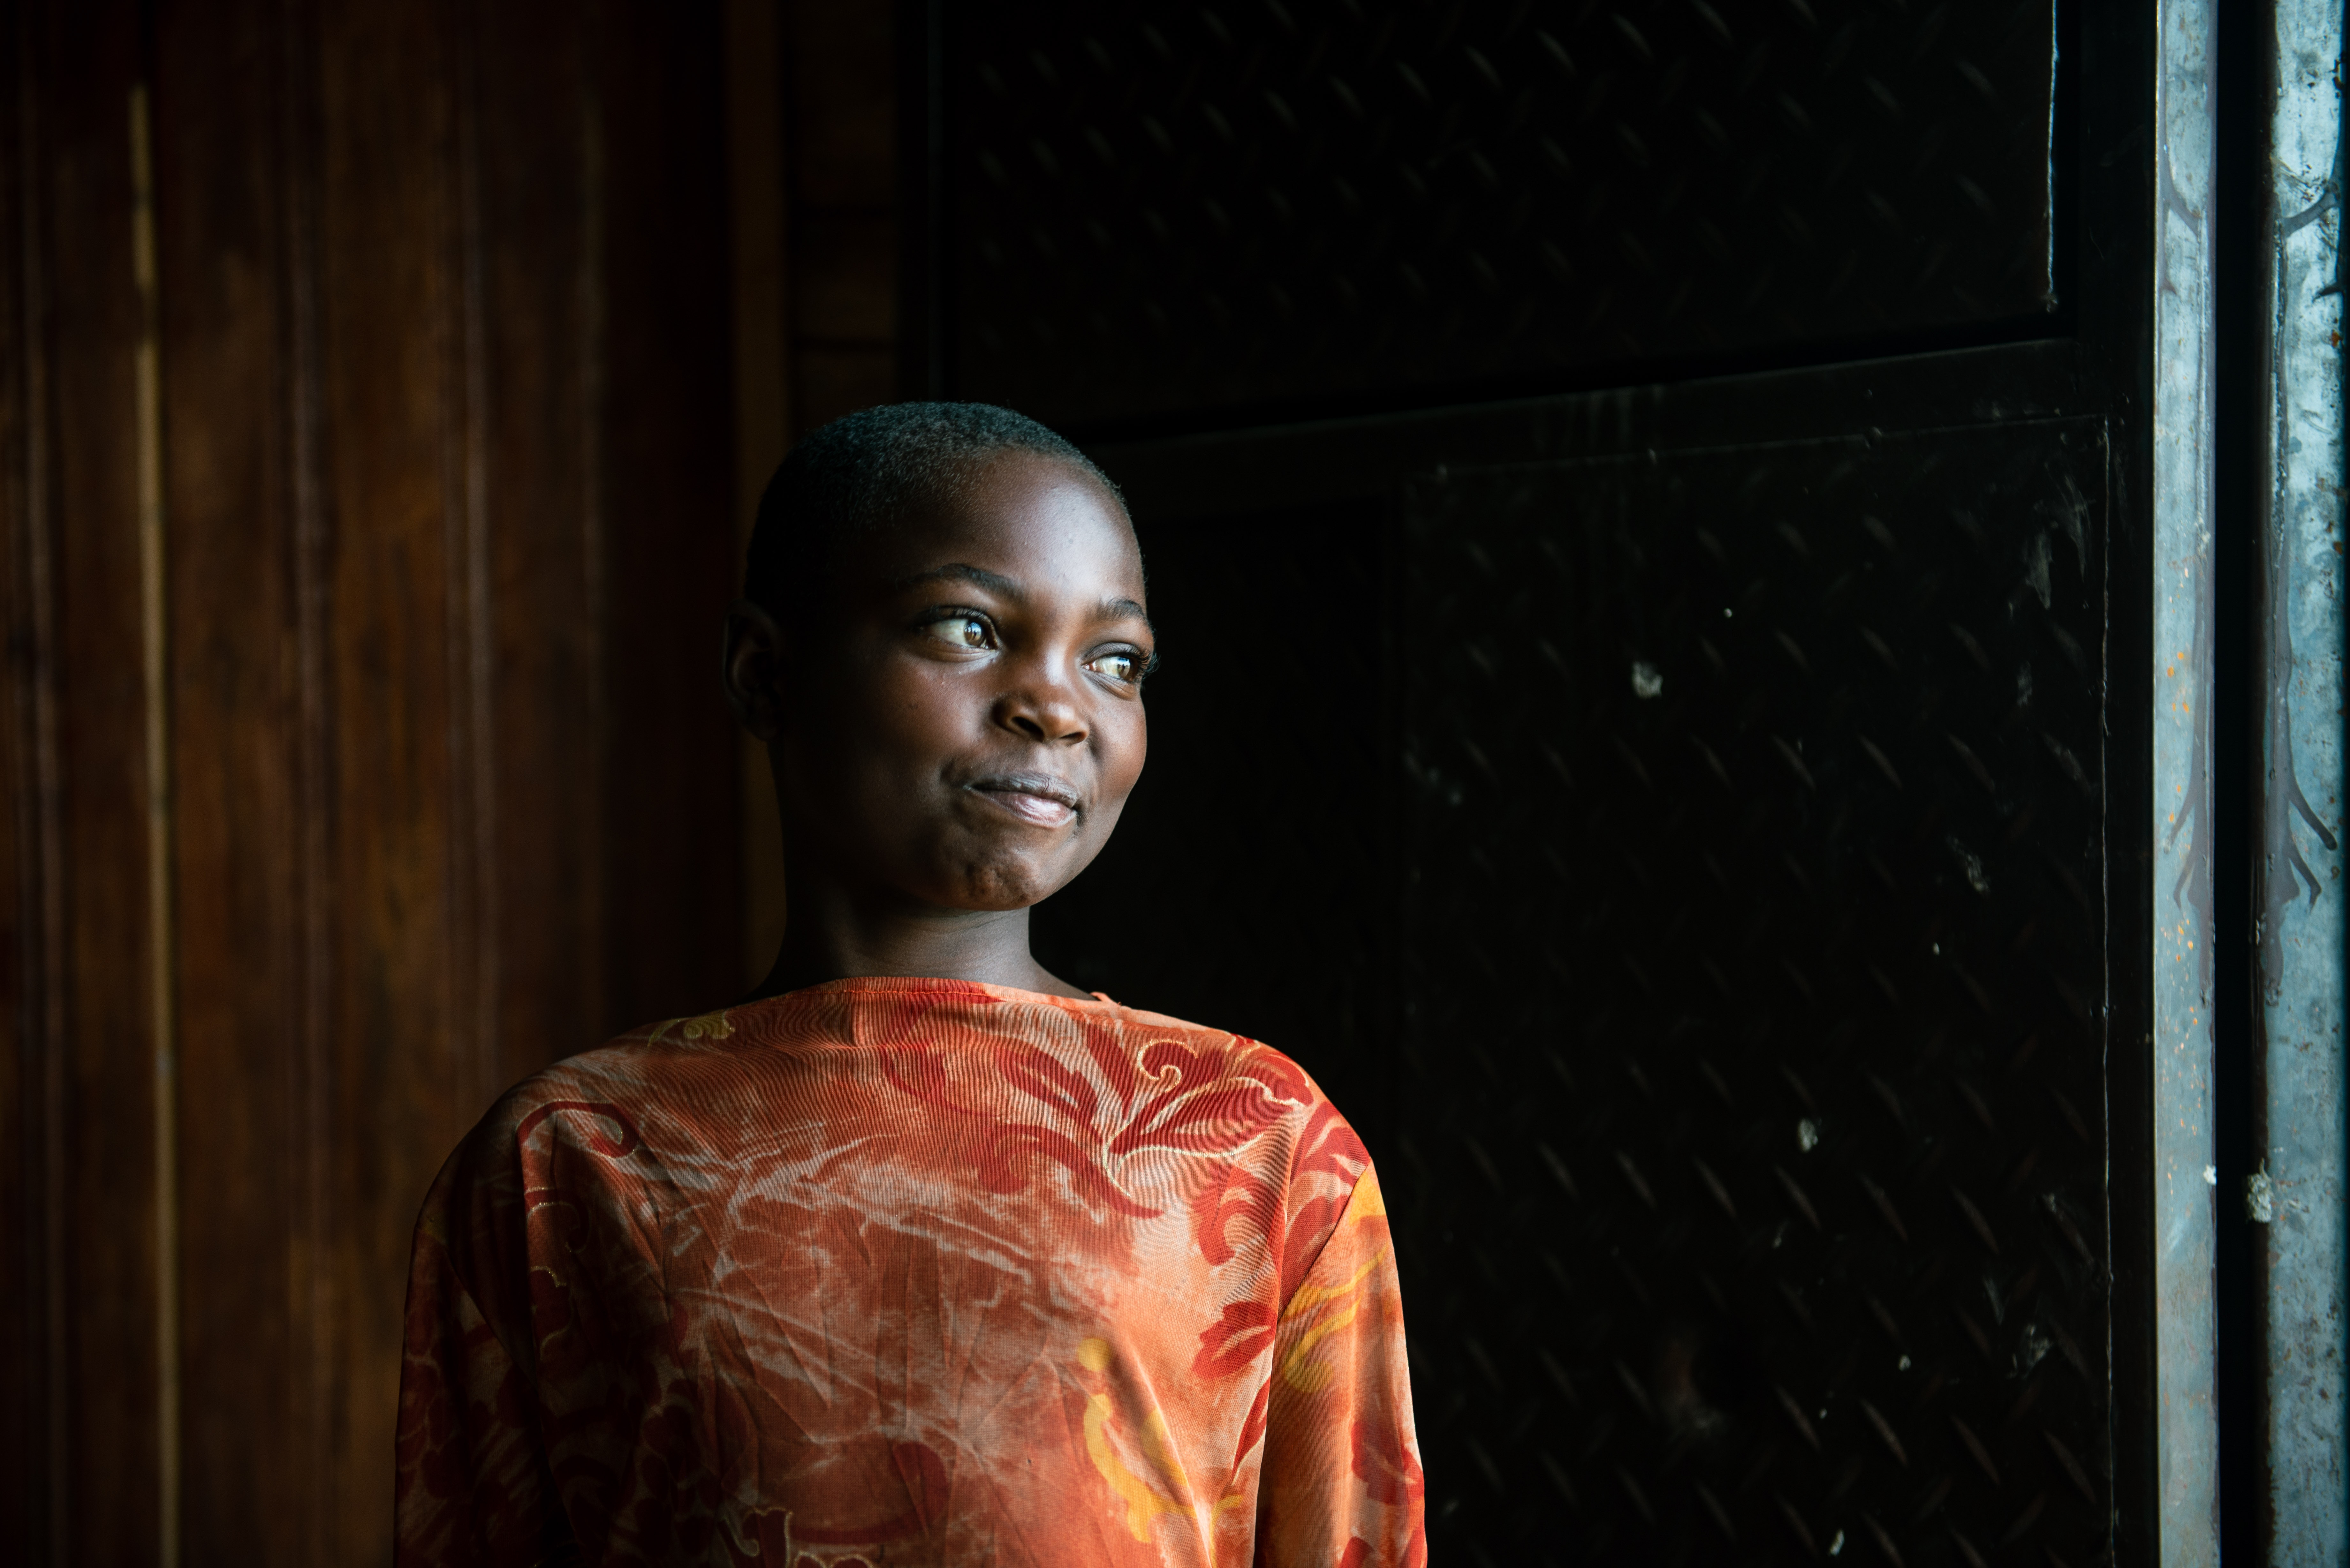 Elleve år gamle Solange ble skilt fra familien sin da de flyktet fra sammenstøtene i landsbyen der de bodde. For tiden blir hun tatt hånd om ved UPDECO-senteret, støttet av UNICEF, som en del av omsorgen for barn som er berørt av væpnede konflikter i Rutshuru i Den demokratiske republikken Kongo. Foto: UNICEF/UN0685626/Bashizi.